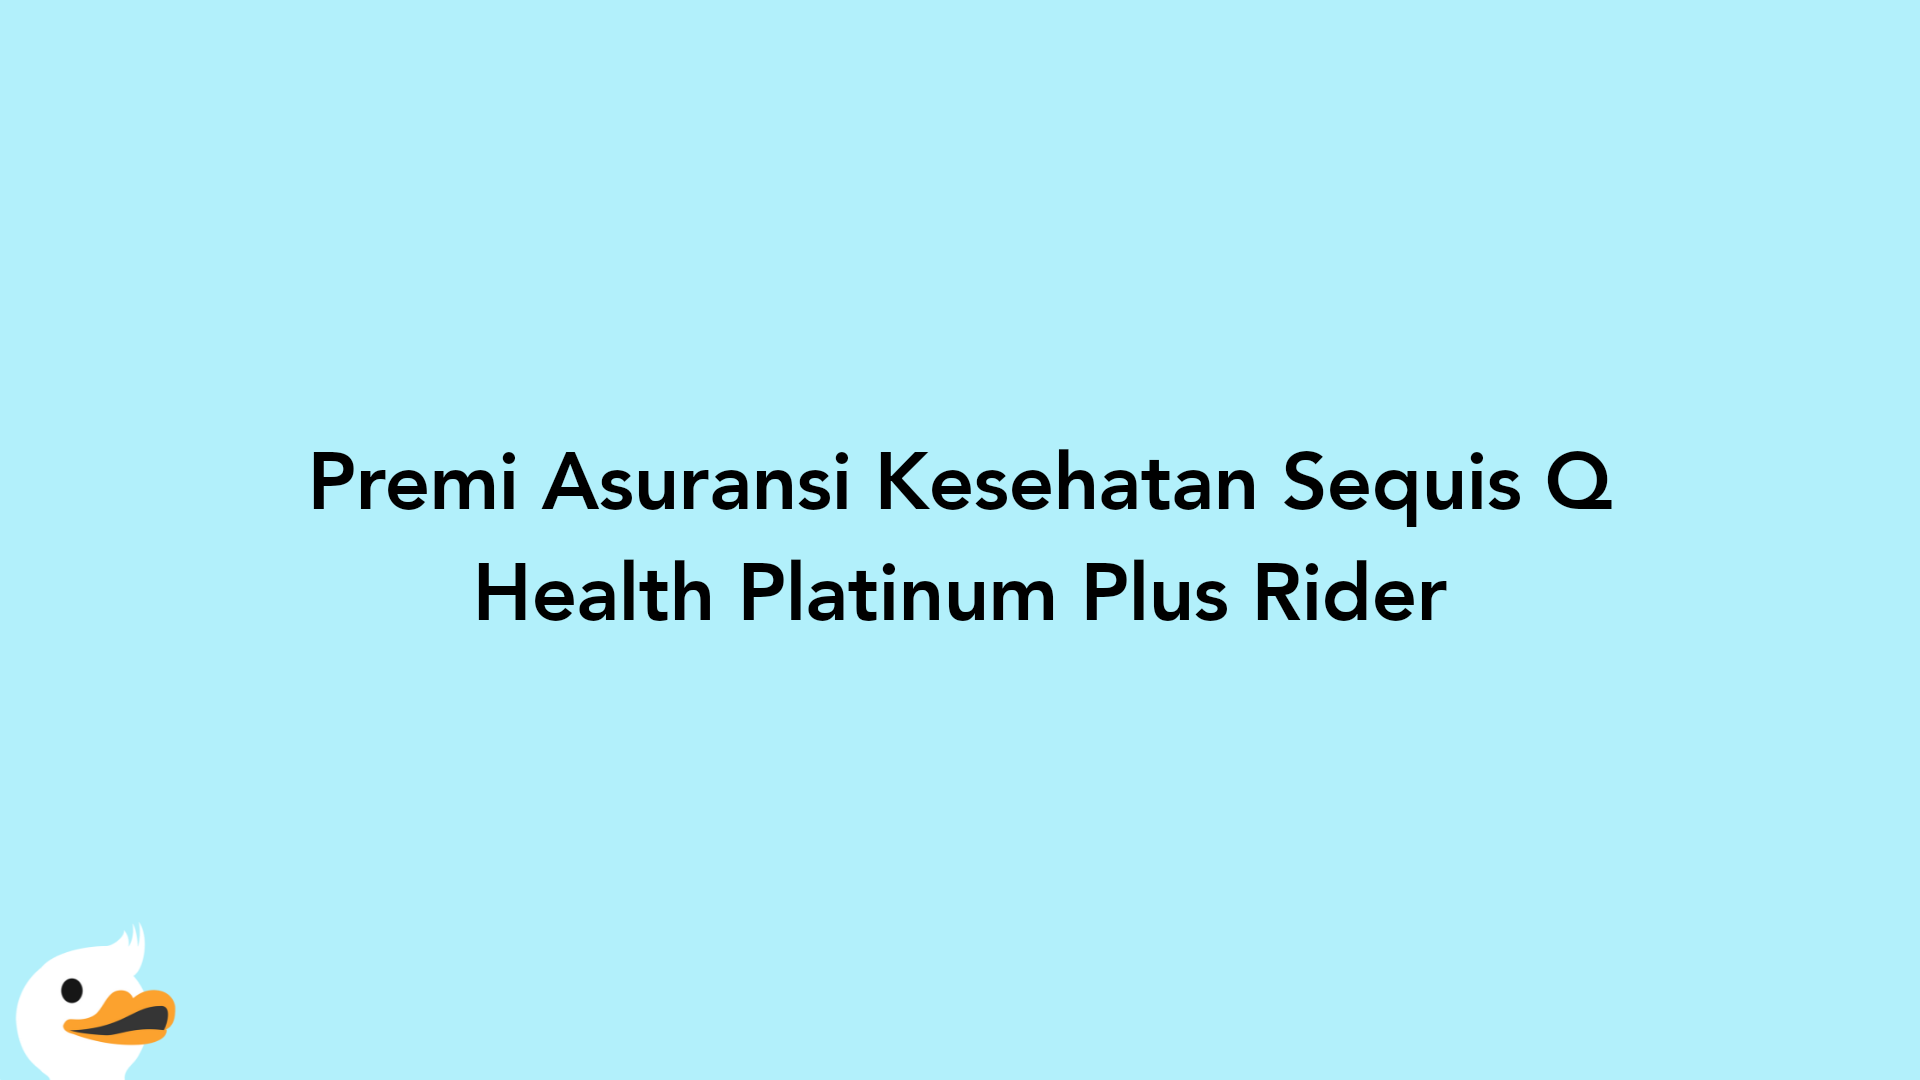 Premi Asuransi Kesehatan Sequis Q Health Platinum Plus Rider